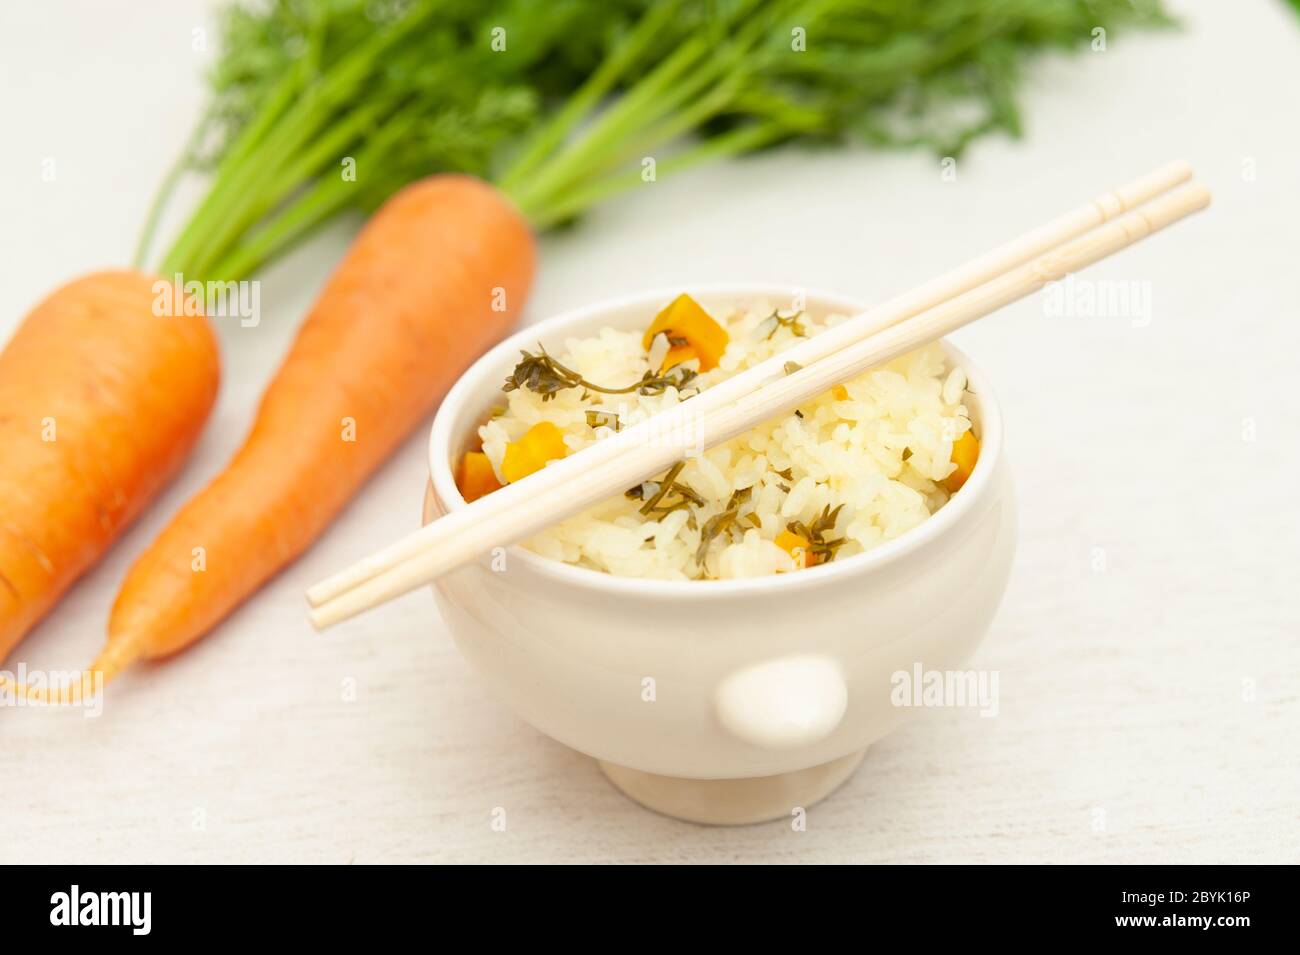 Vegetarische / vegane Küche - Rohe Karotten mit Blättern und eine Schüssel gekochten Reis mit Karotten. Essstäbchen oben auf dem Behälter. Stockfoto